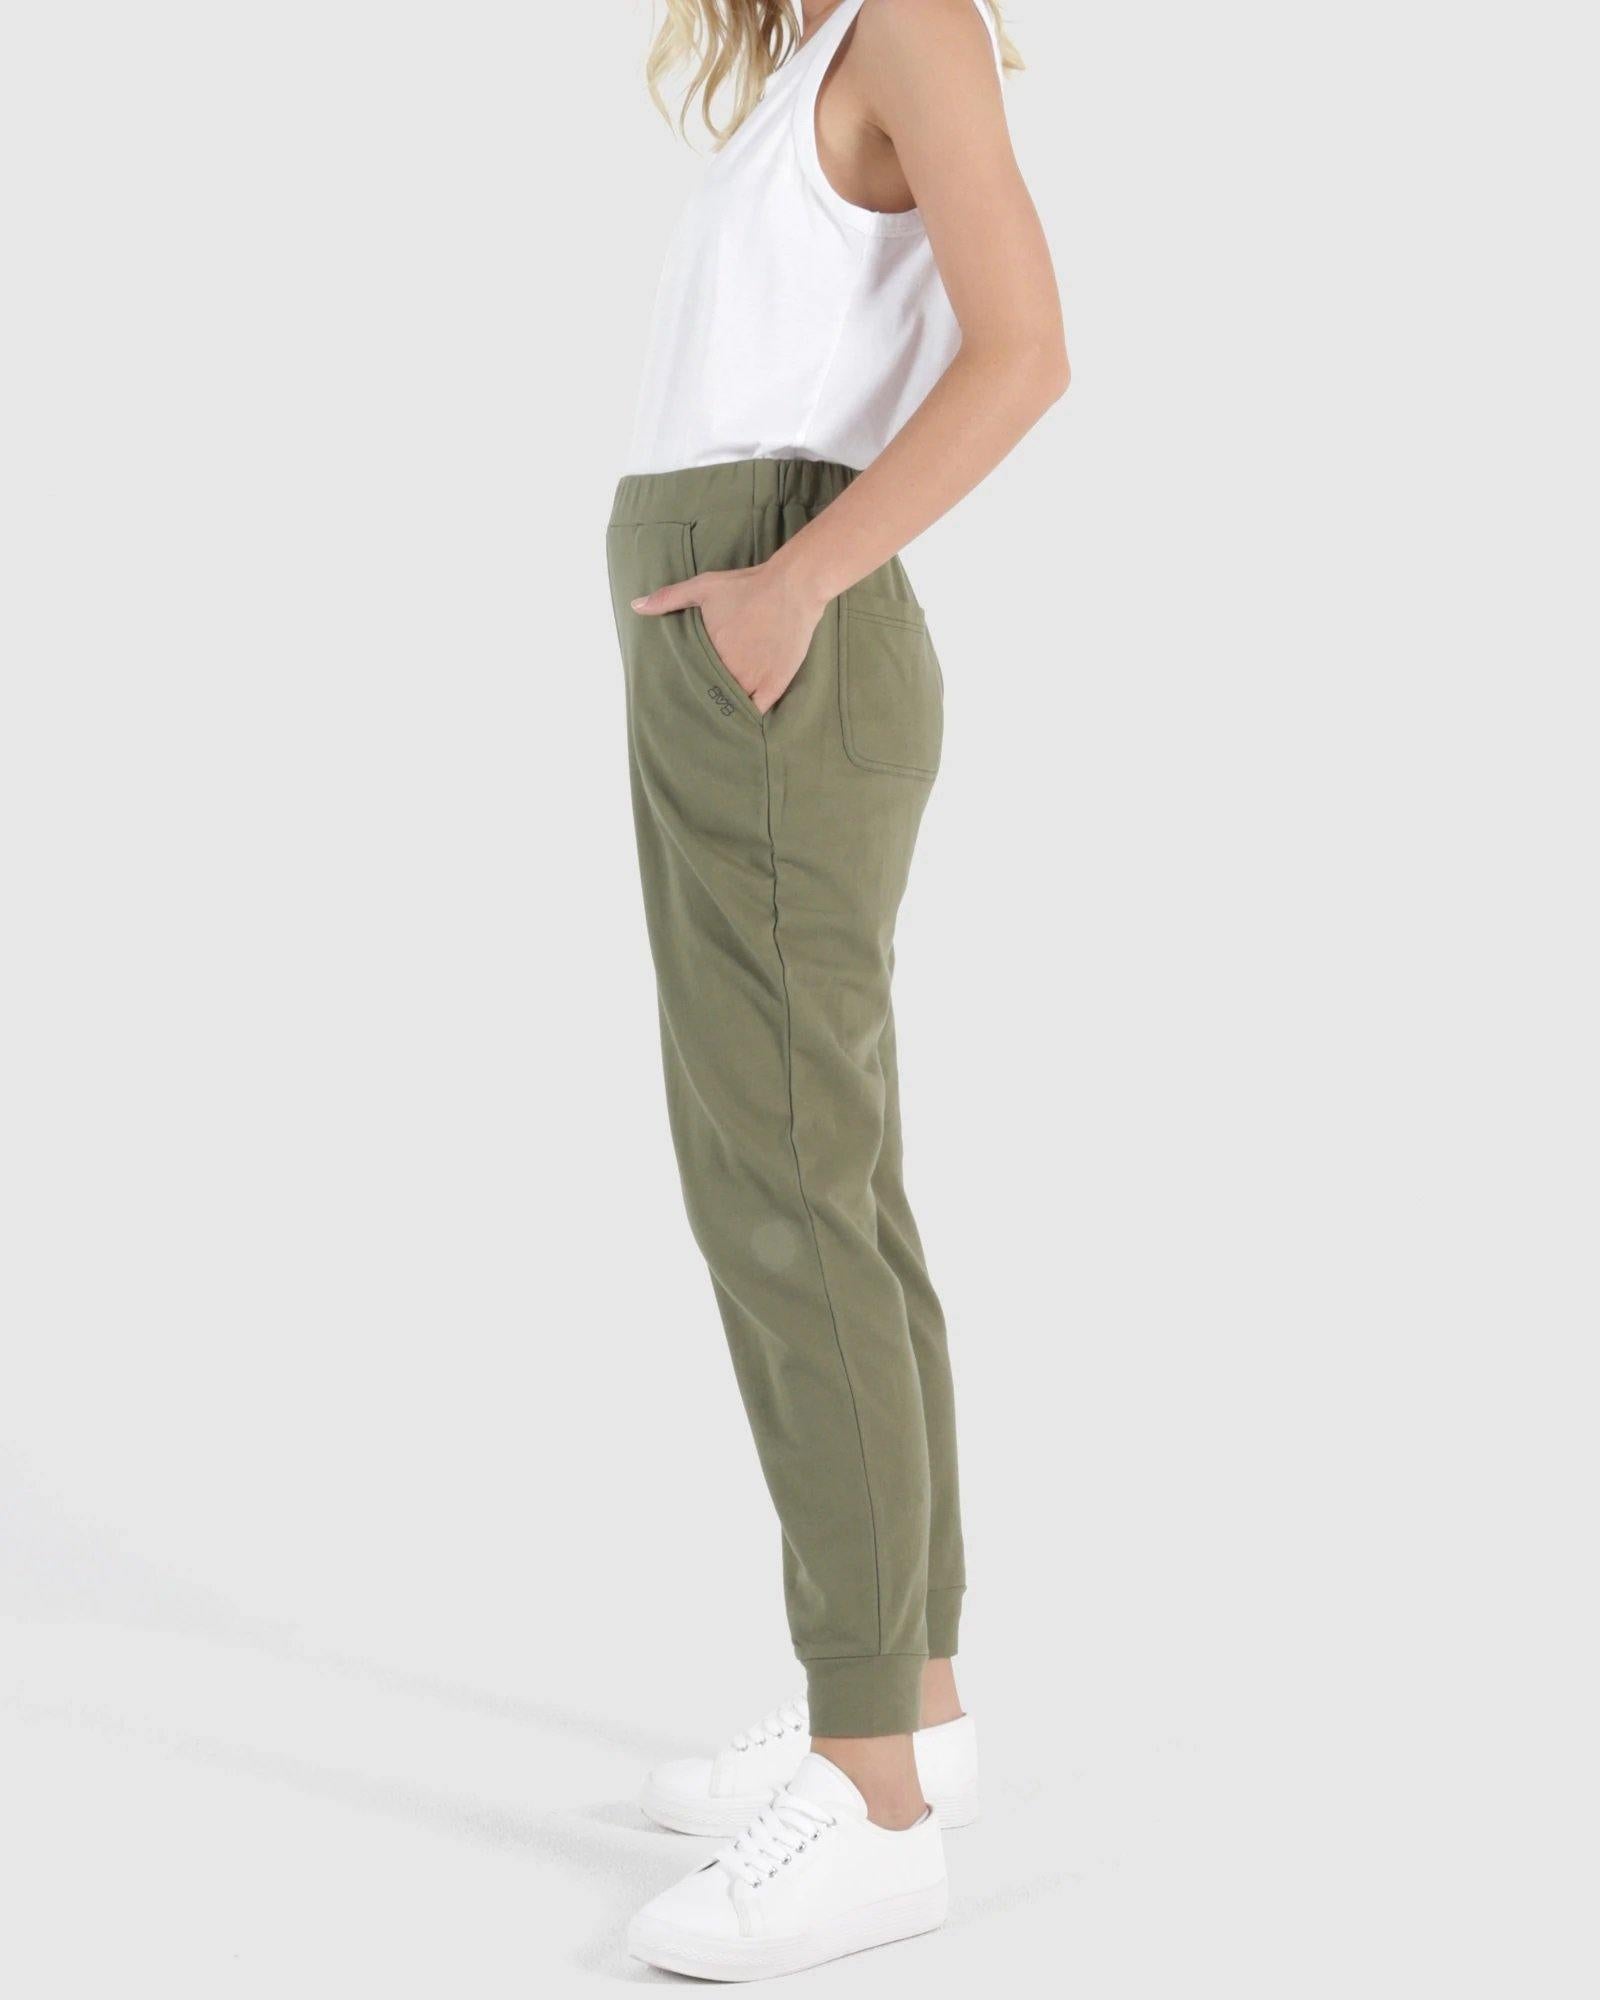 Women's Lounge Pants for Sale, Shop Online